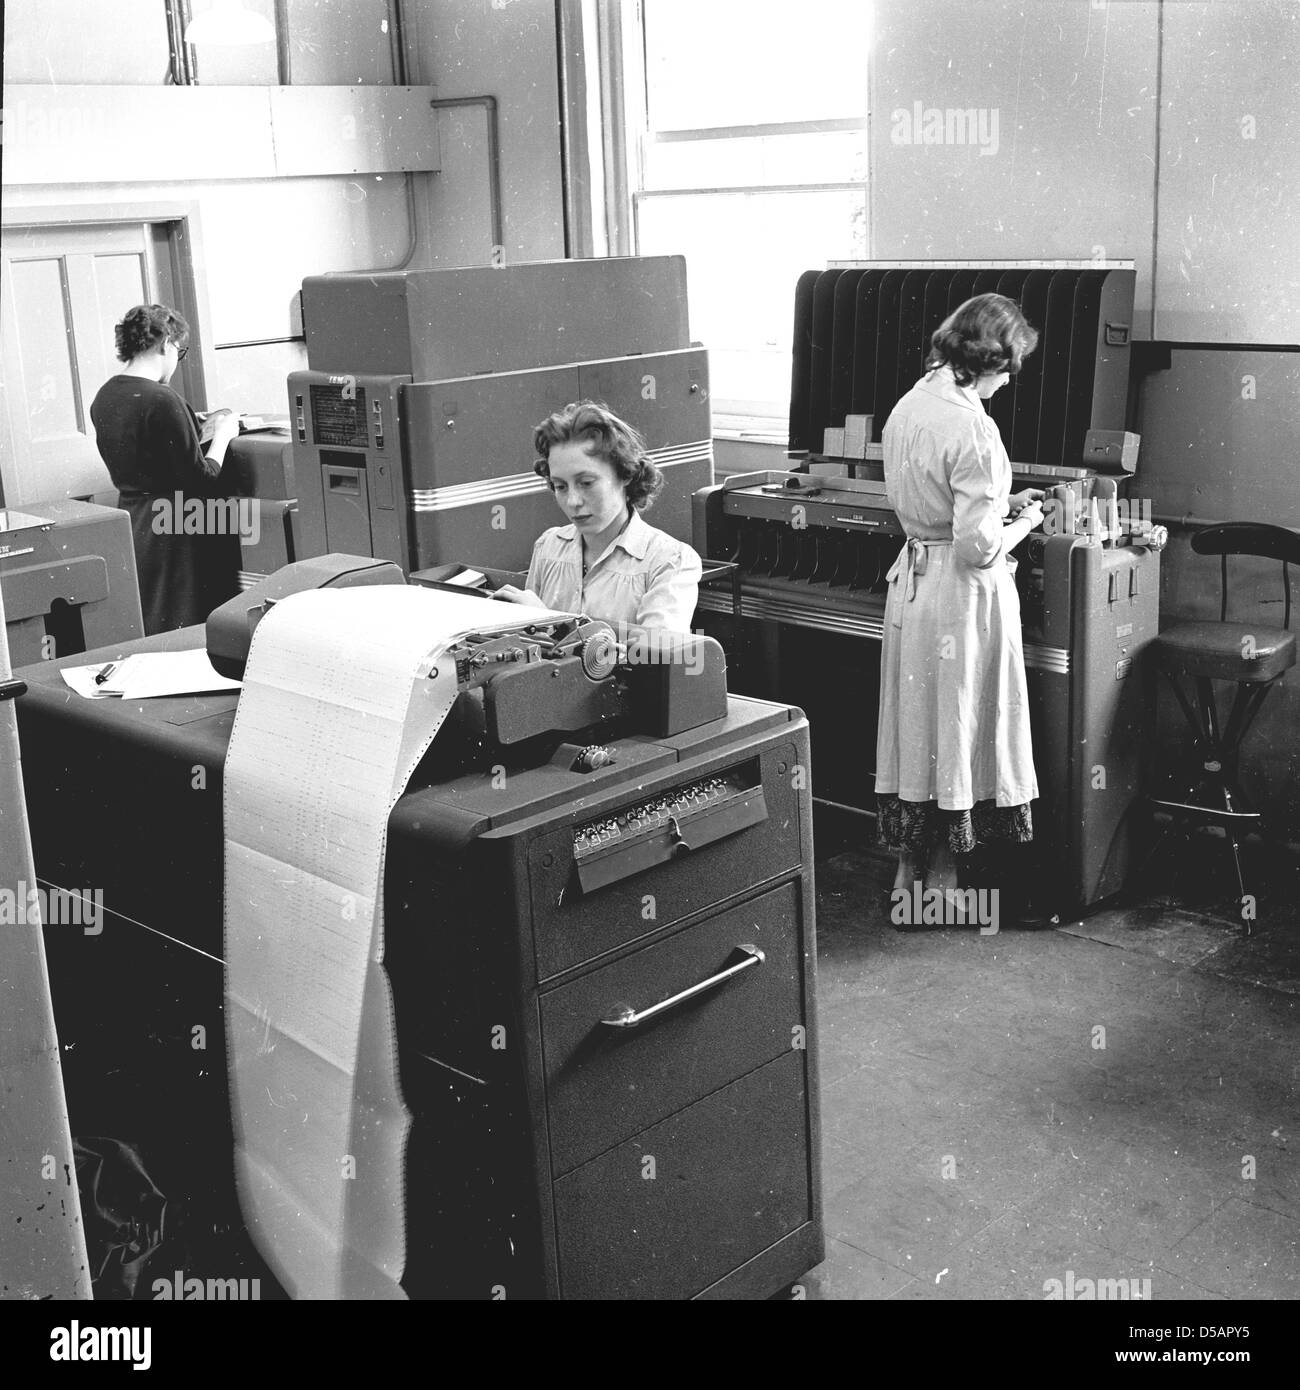 Tableau historique de la fin des années 1950 de trois jeunes femmes travaillant dans un bureau de l'entreprise utilisant les grandes et lourdes machines de traitement de données et les imprimantes électroniques de l'époque. Une dame travaille à un tabulateur, une machine de traitement de données ancienne, utilisée pour traiter les données conservées sur des cartes perforées, tandis qu'une autre dame est à ce qui était appelé un collator, une machine qui a trié les cartes perforées. Ces machines étaient les précurseurs des premiers ordinateurs. Banque D'Images